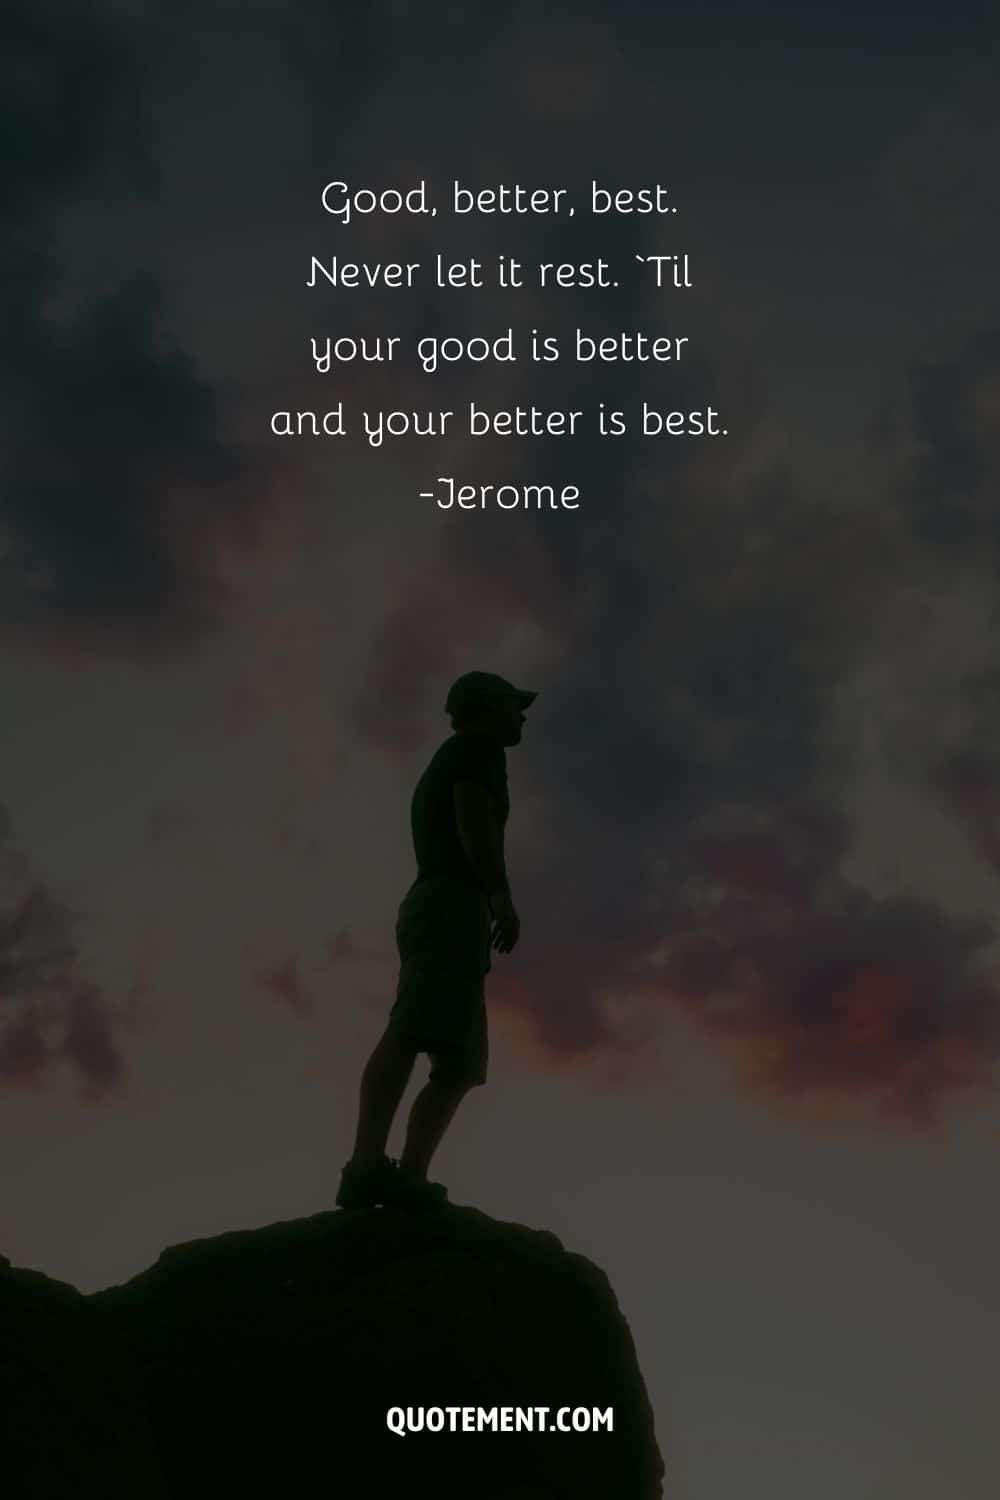 Good, better, best. Never let it rest.